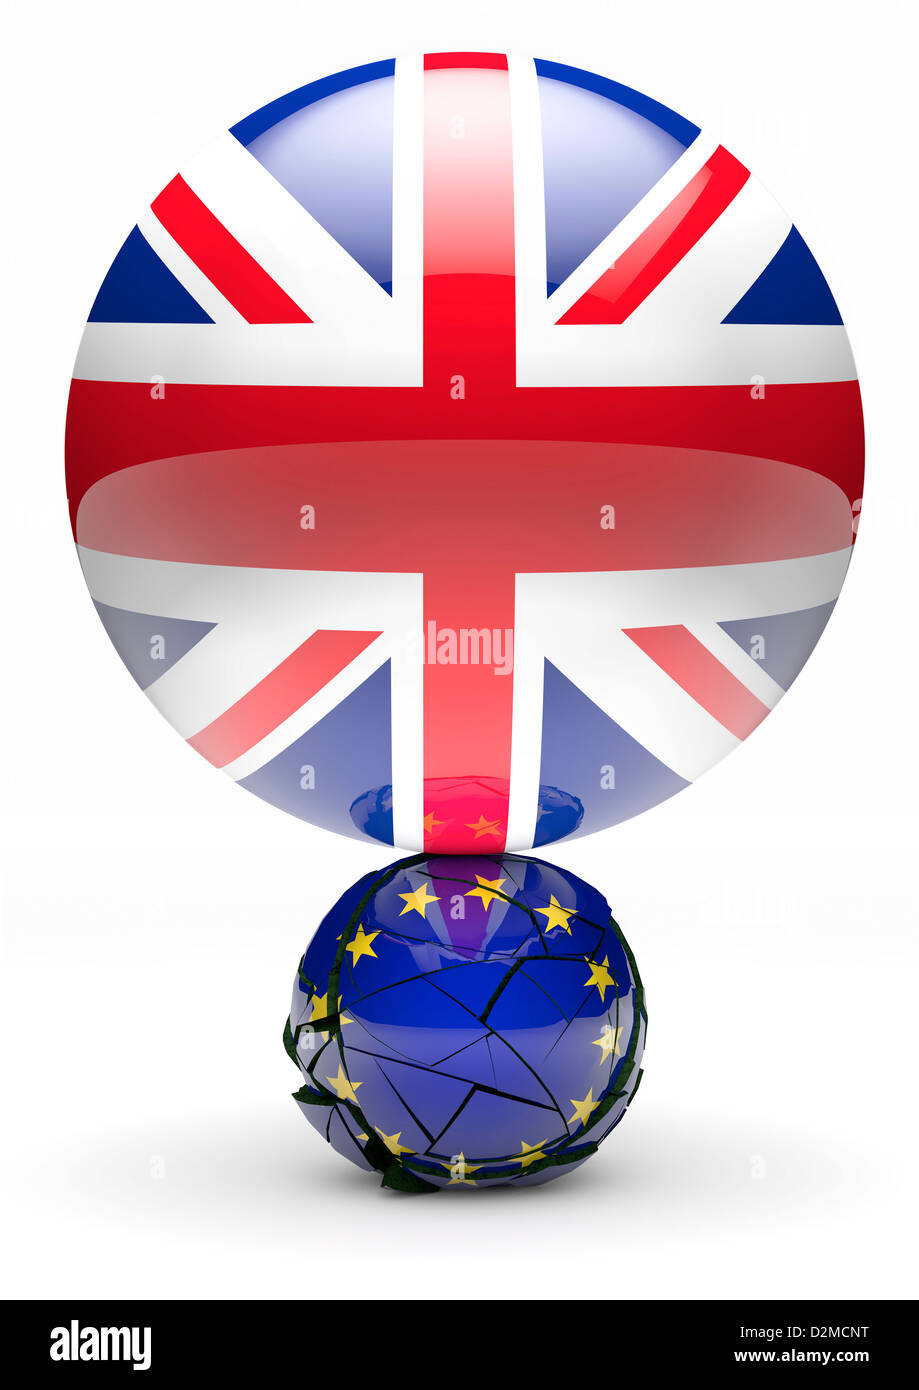 EU referendum concept - Union flag sphere crushing smaller European flag sphere Stock Photo